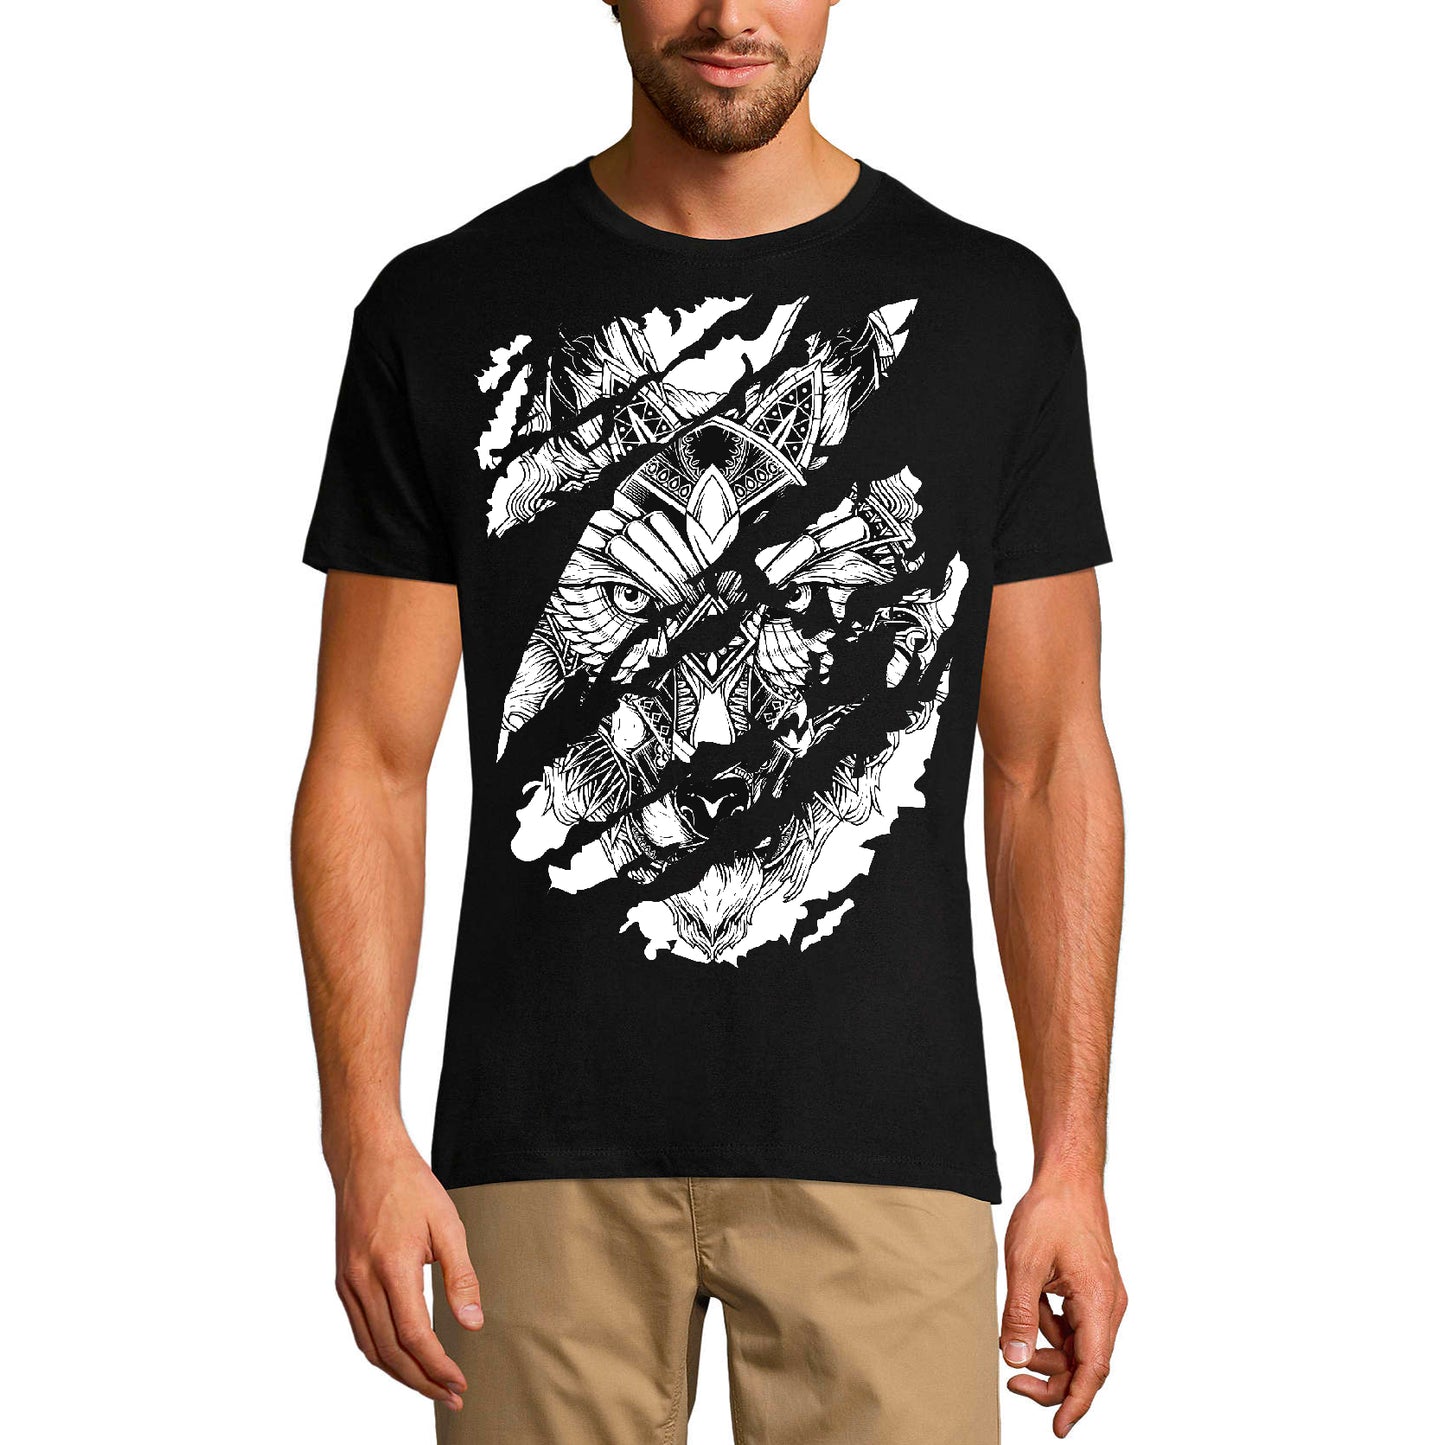 ULTRABASIC Men's Torn T-Shirt Warrior Wolf - Funny Shirt for Men